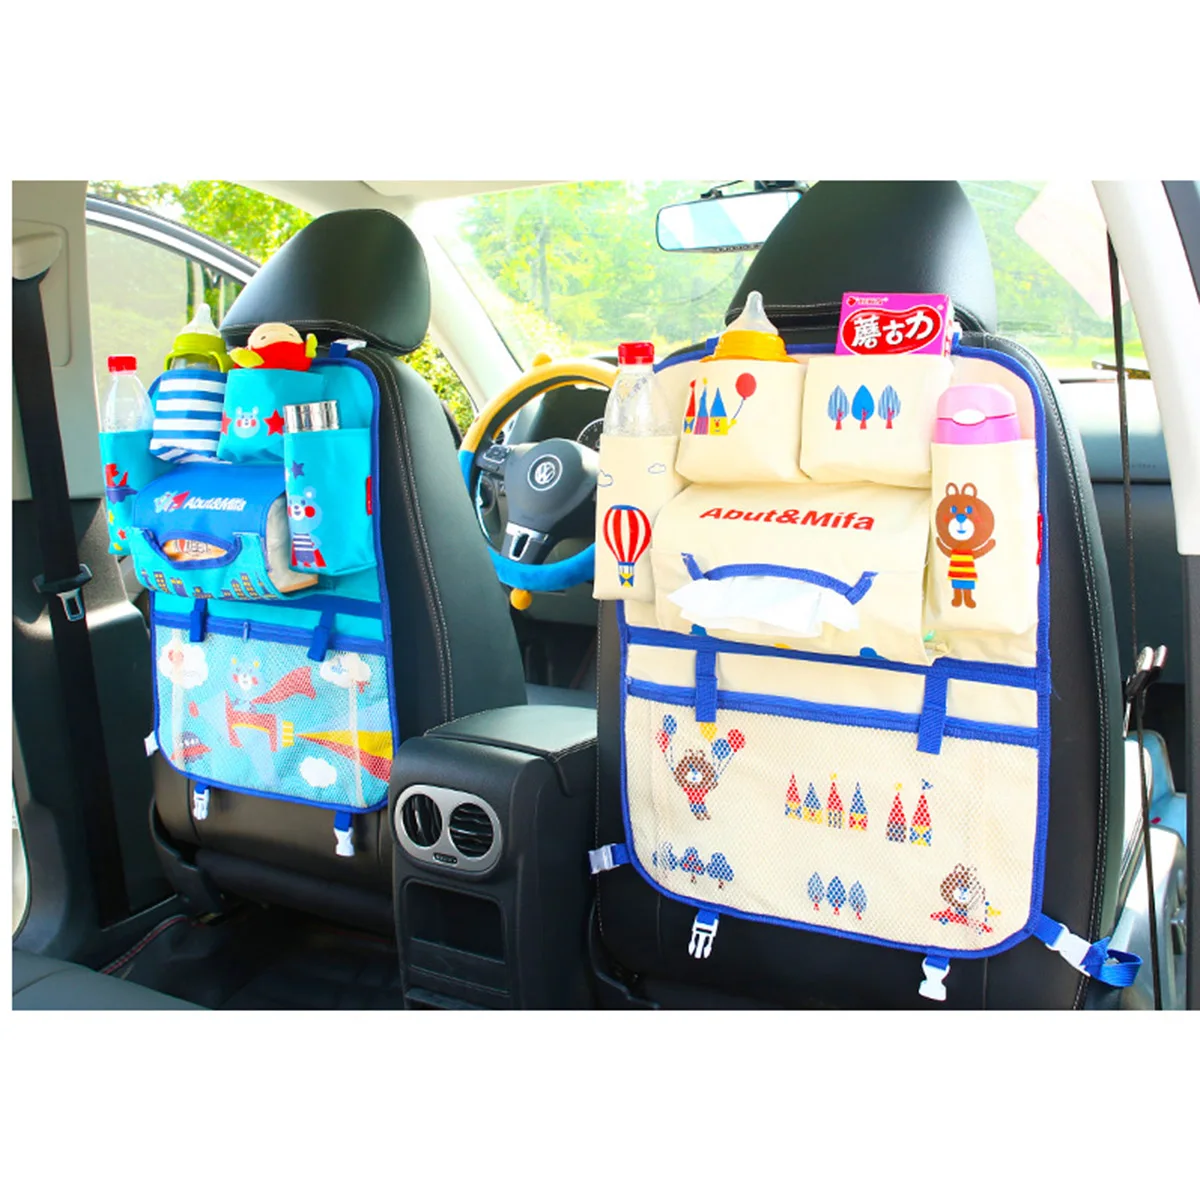 Авто Автокресло Вернуться сумка для хранения висит сумки органов организатор автомобиль Укладка Уборка автомобиля для маленьких детей